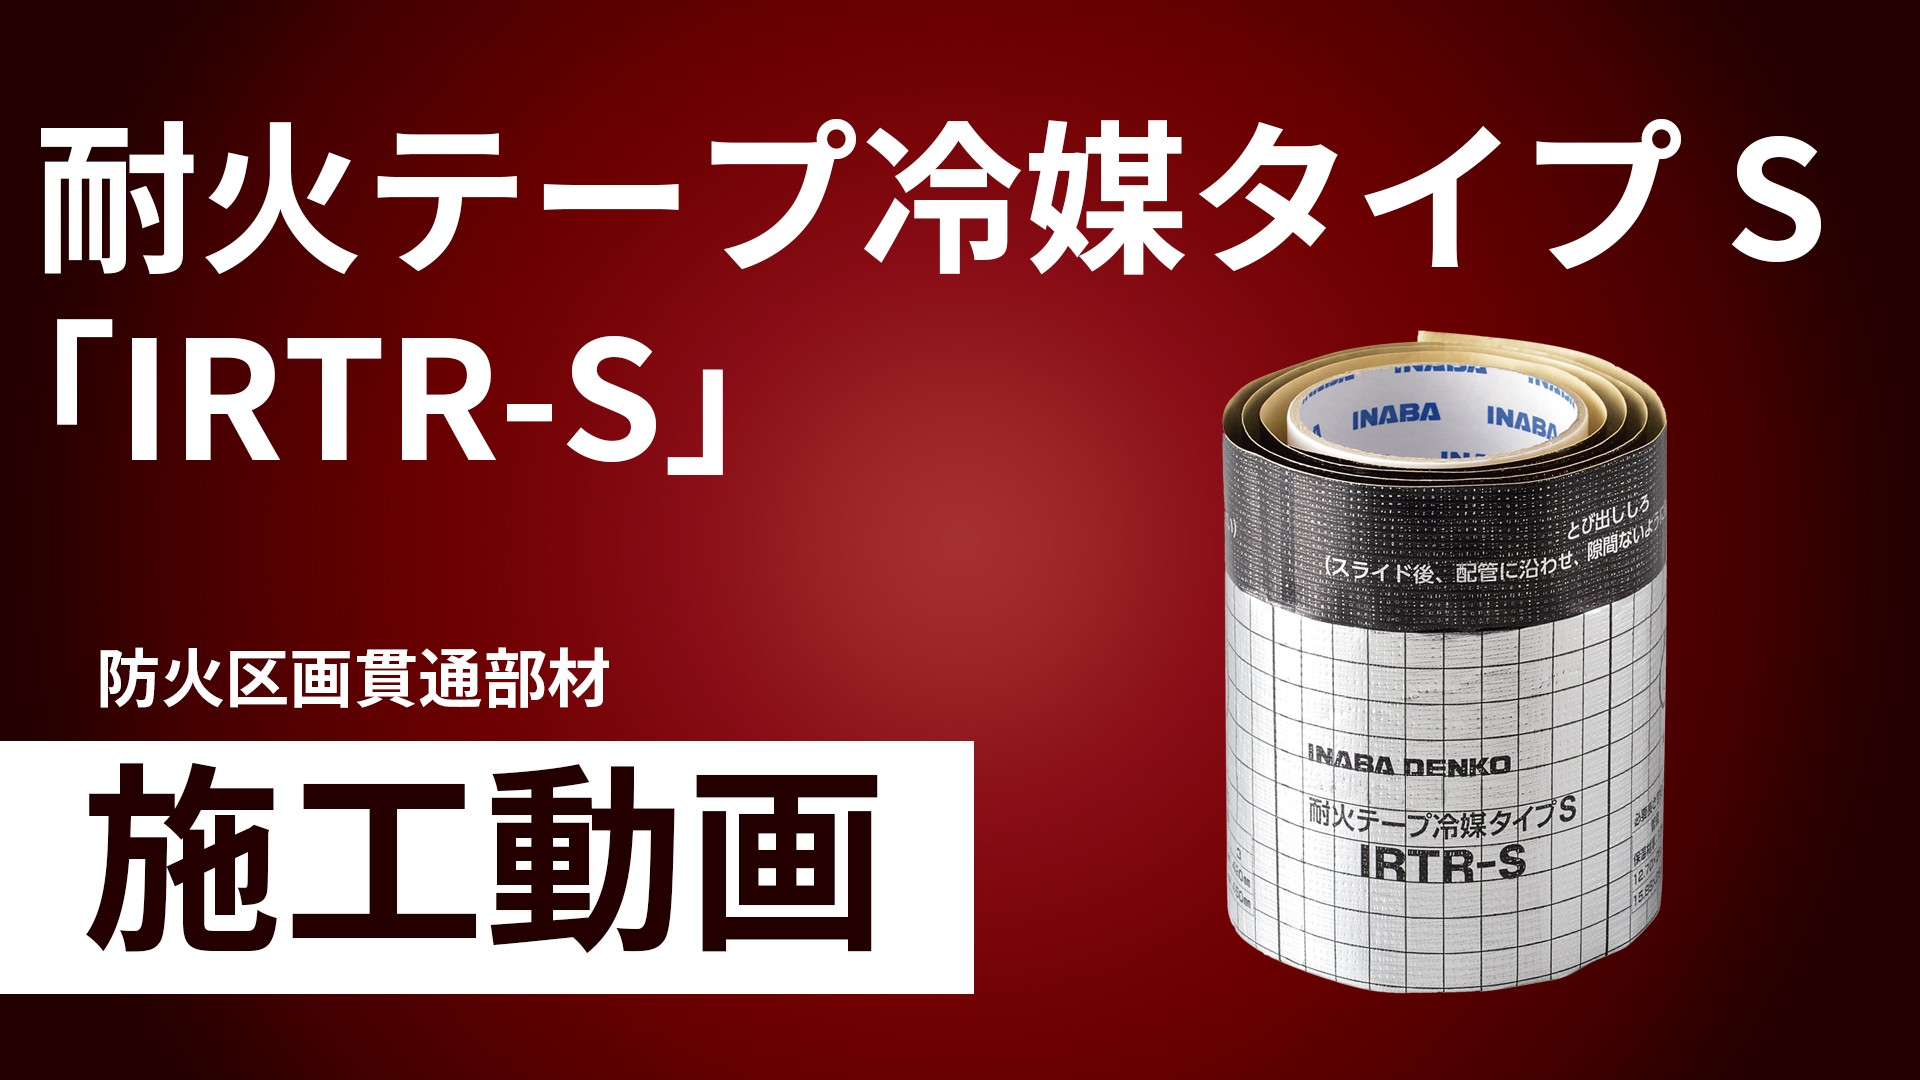 因幡電工 耐火テープ冷媒タイプ IRTR-S